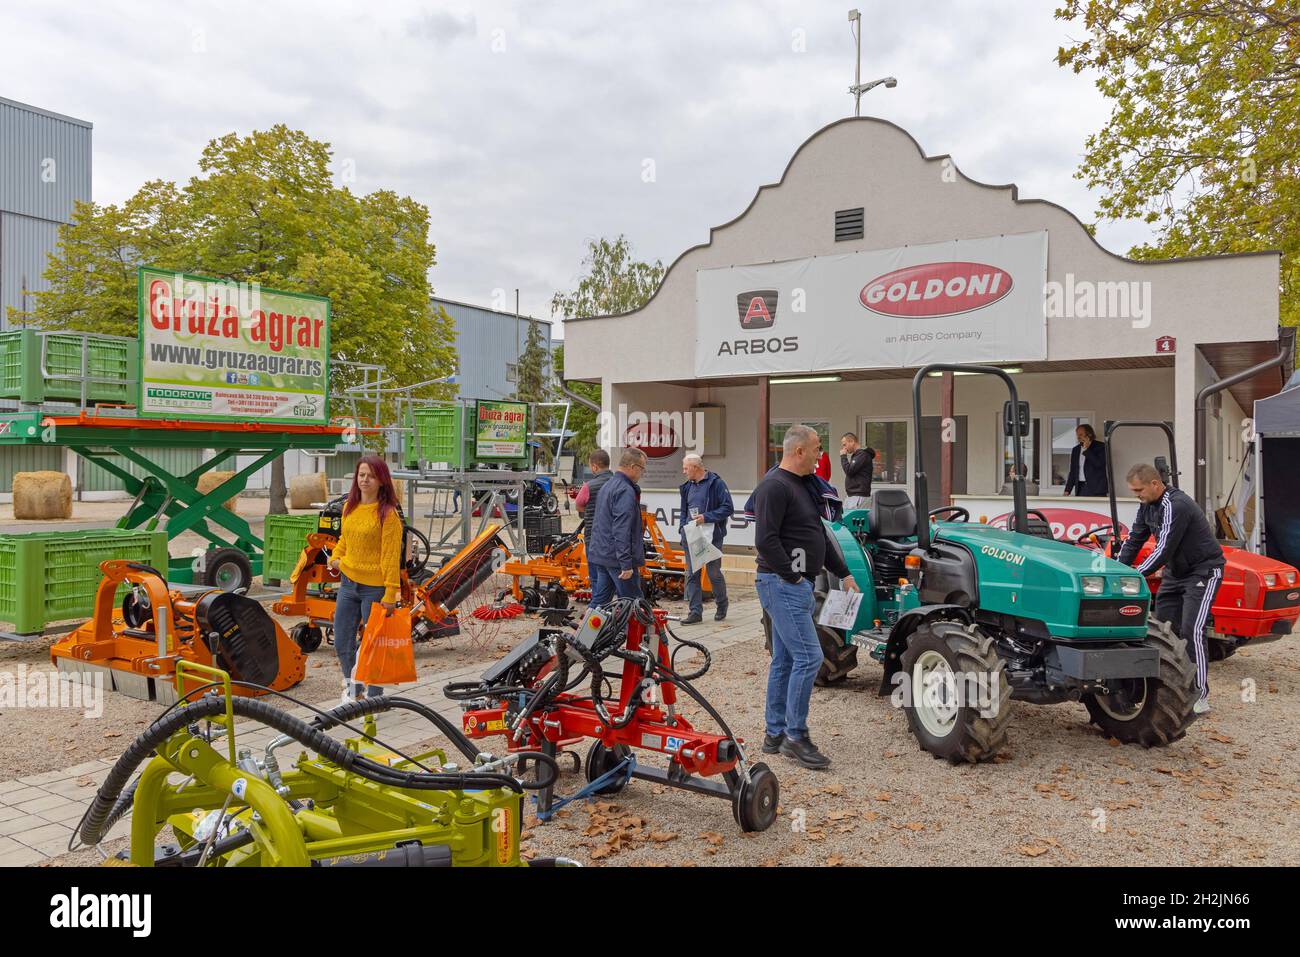 Novi Sad, Serbien - 21. September 2021: Motorisierte Mäher Grubber Traktoren Goldoni ARBOS Italienisches Unternehmen auf der Landwirtschaftsmesse Gruza Agrar. Stockfoto